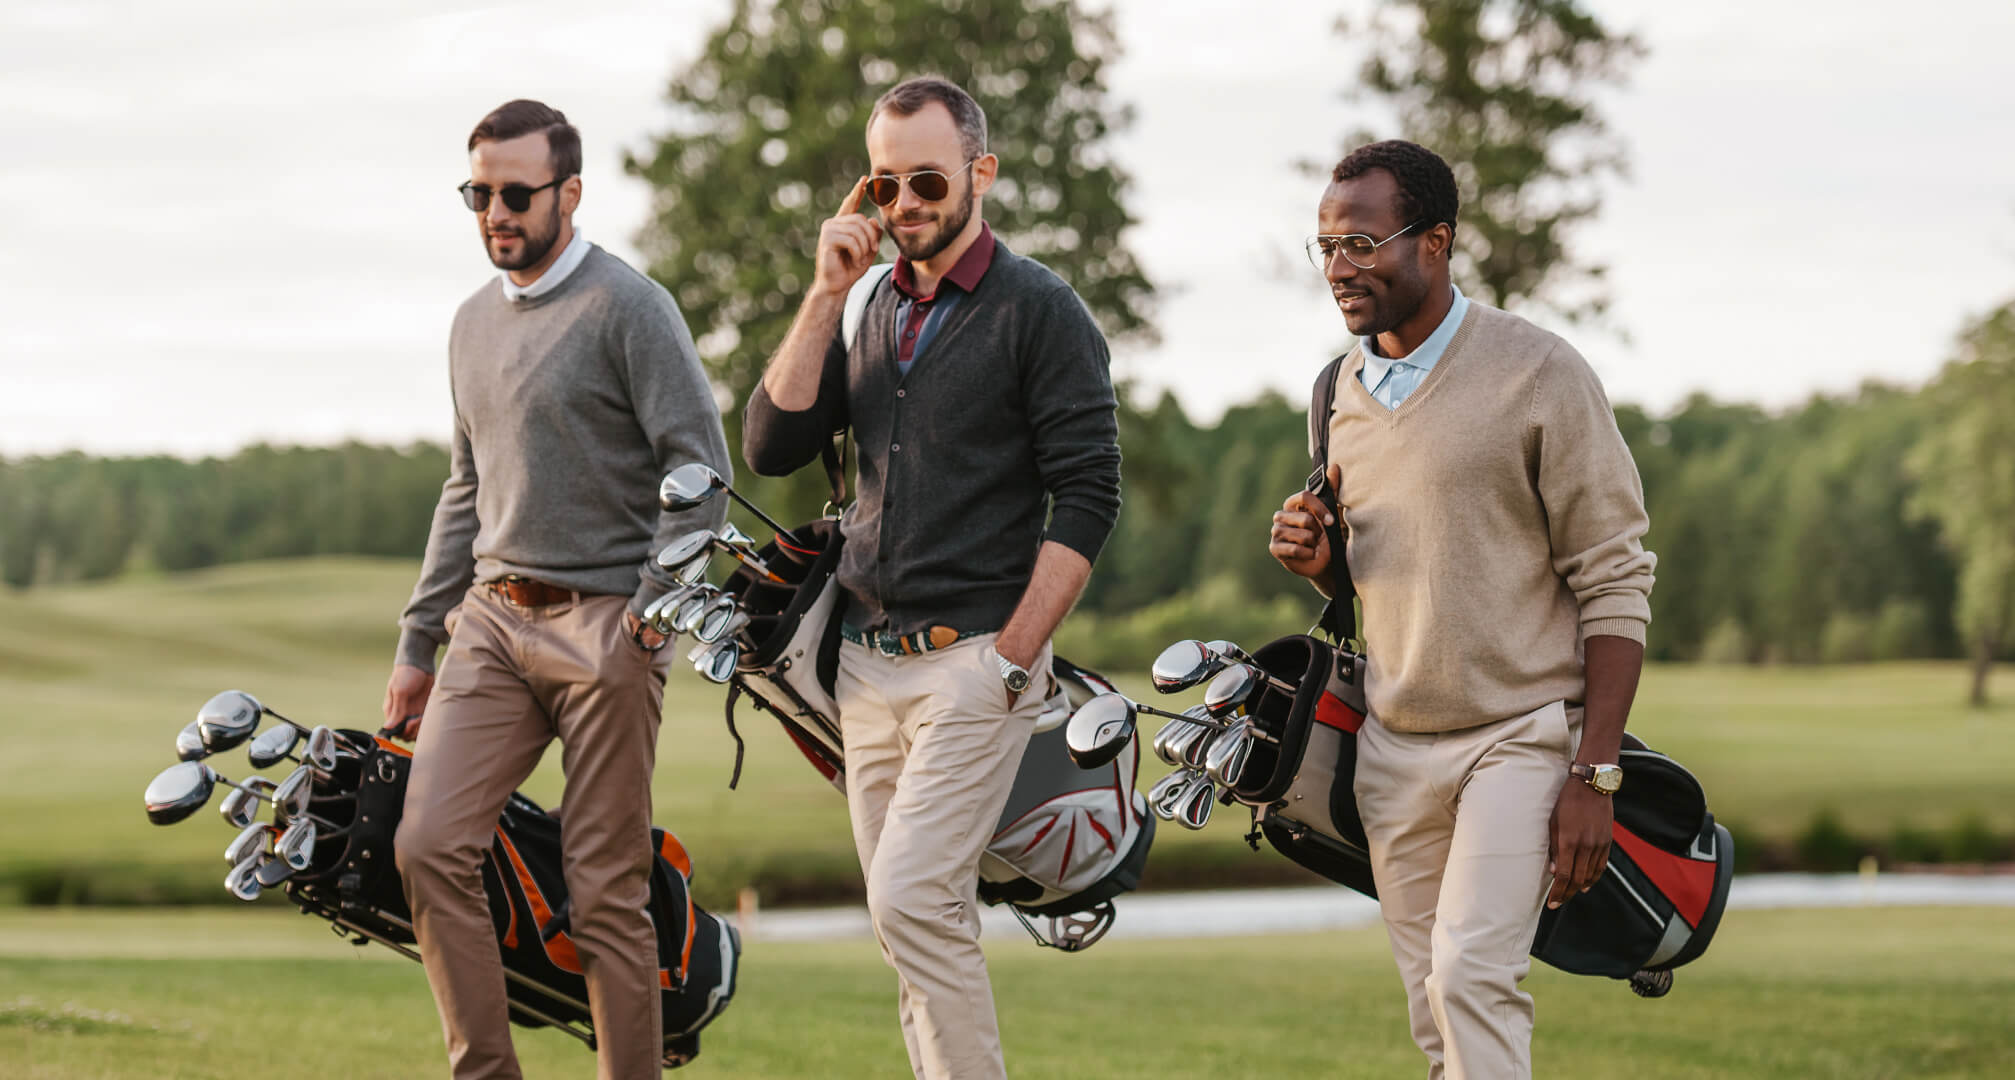 trois personnes jouant au golf avec des lunettes de soleil et des sacs de golf